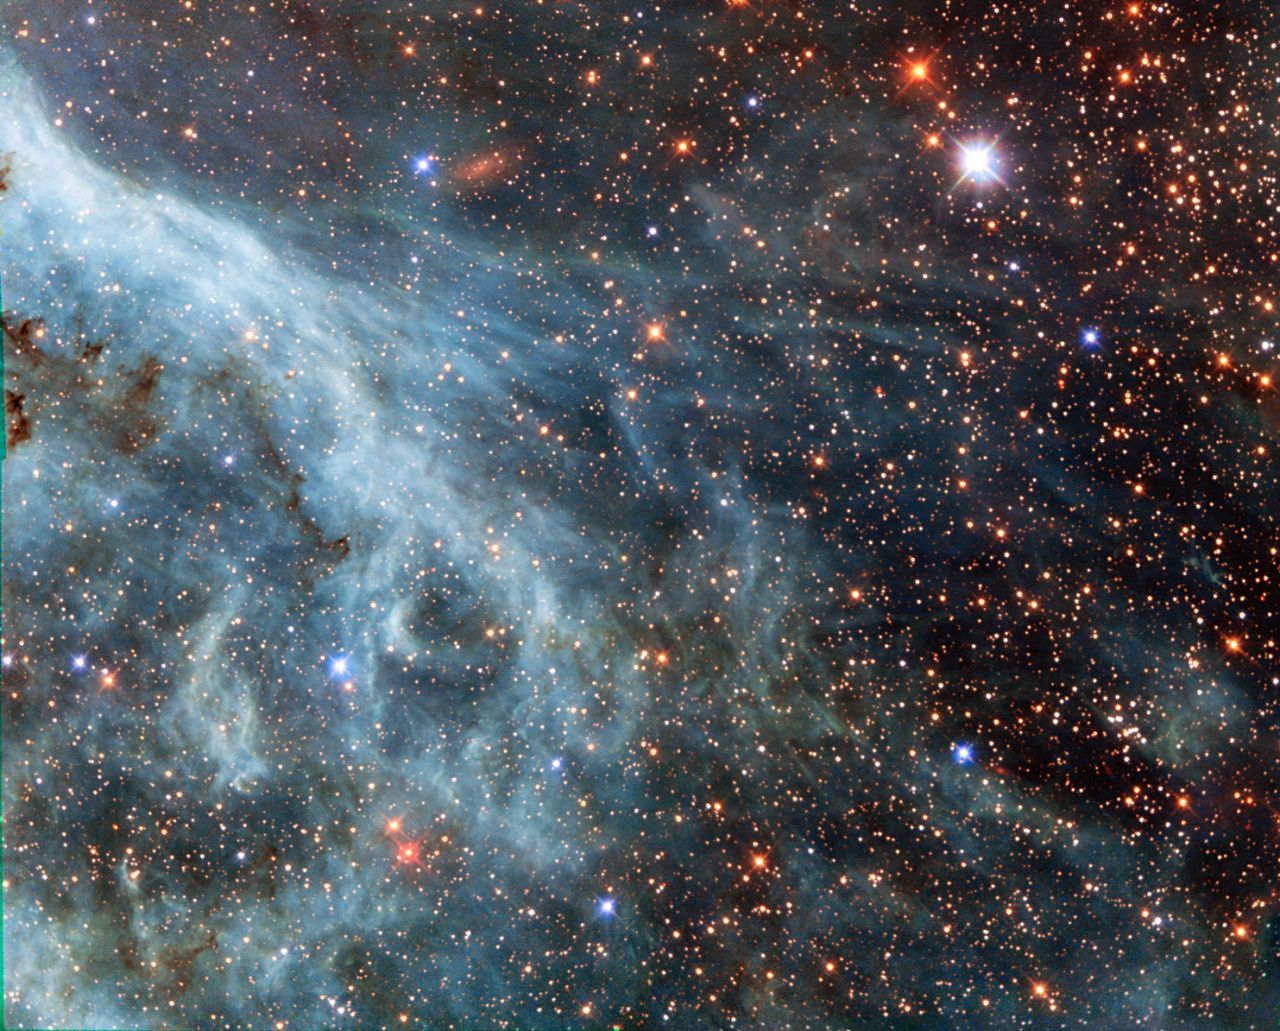 Die "Große Magellansche Wolke" ist eine Galaxie, die nicht unweit der Erde um die Milchstraße kreist. Aufgrund ihrer Nähe konnte Hubble schon mehrfach detaillierte Aufnahmen der Galaxie machen.